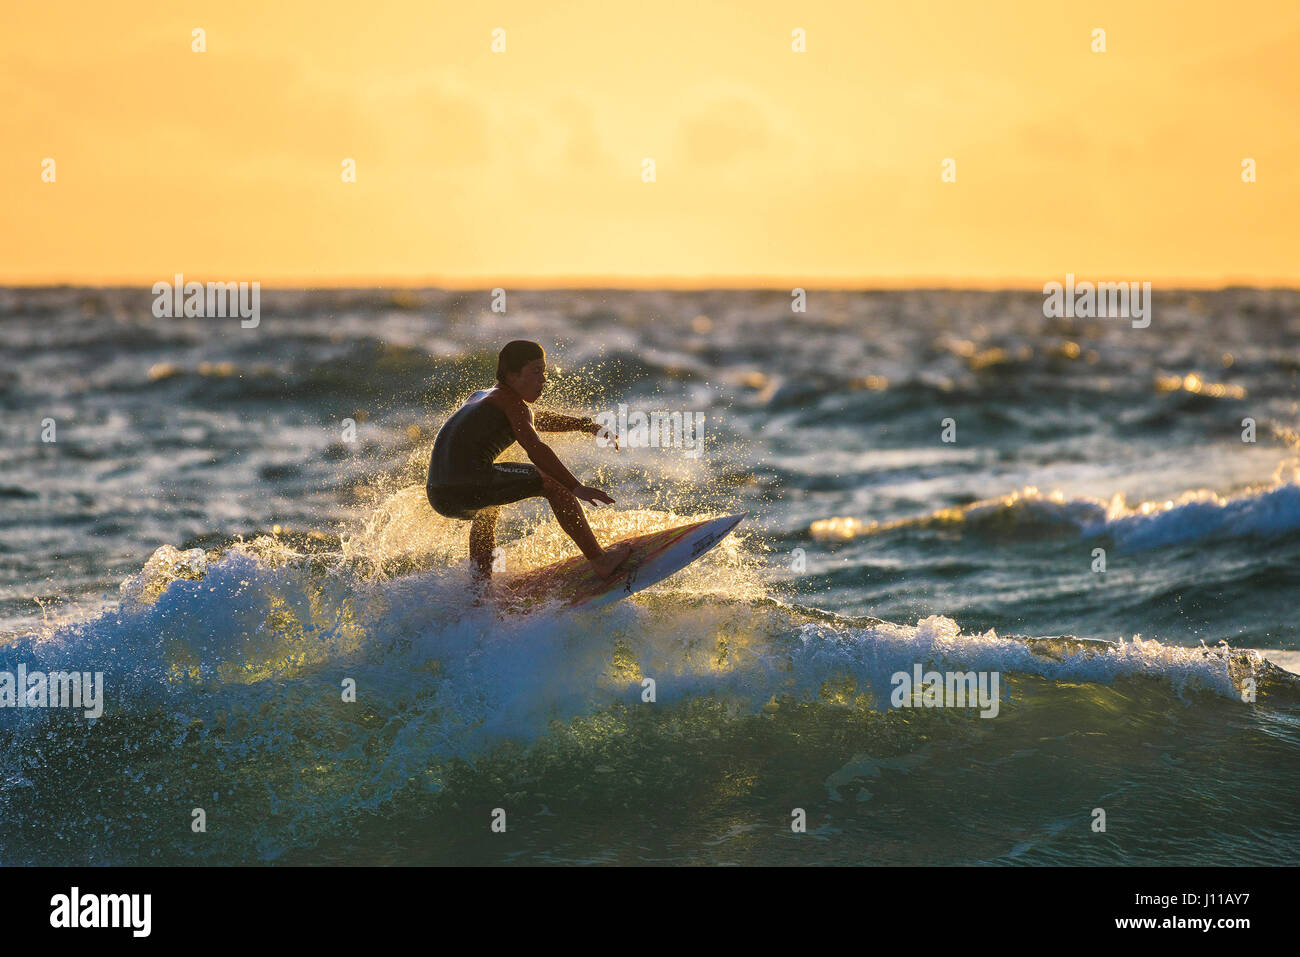 Surf UK; Surfer; Fistral; Cornovaglia; sera; luce della sera; tramonto; impostazione sun; Spray; Onda; Surf; Mare; Sport acquatici; Sera Foto Stock